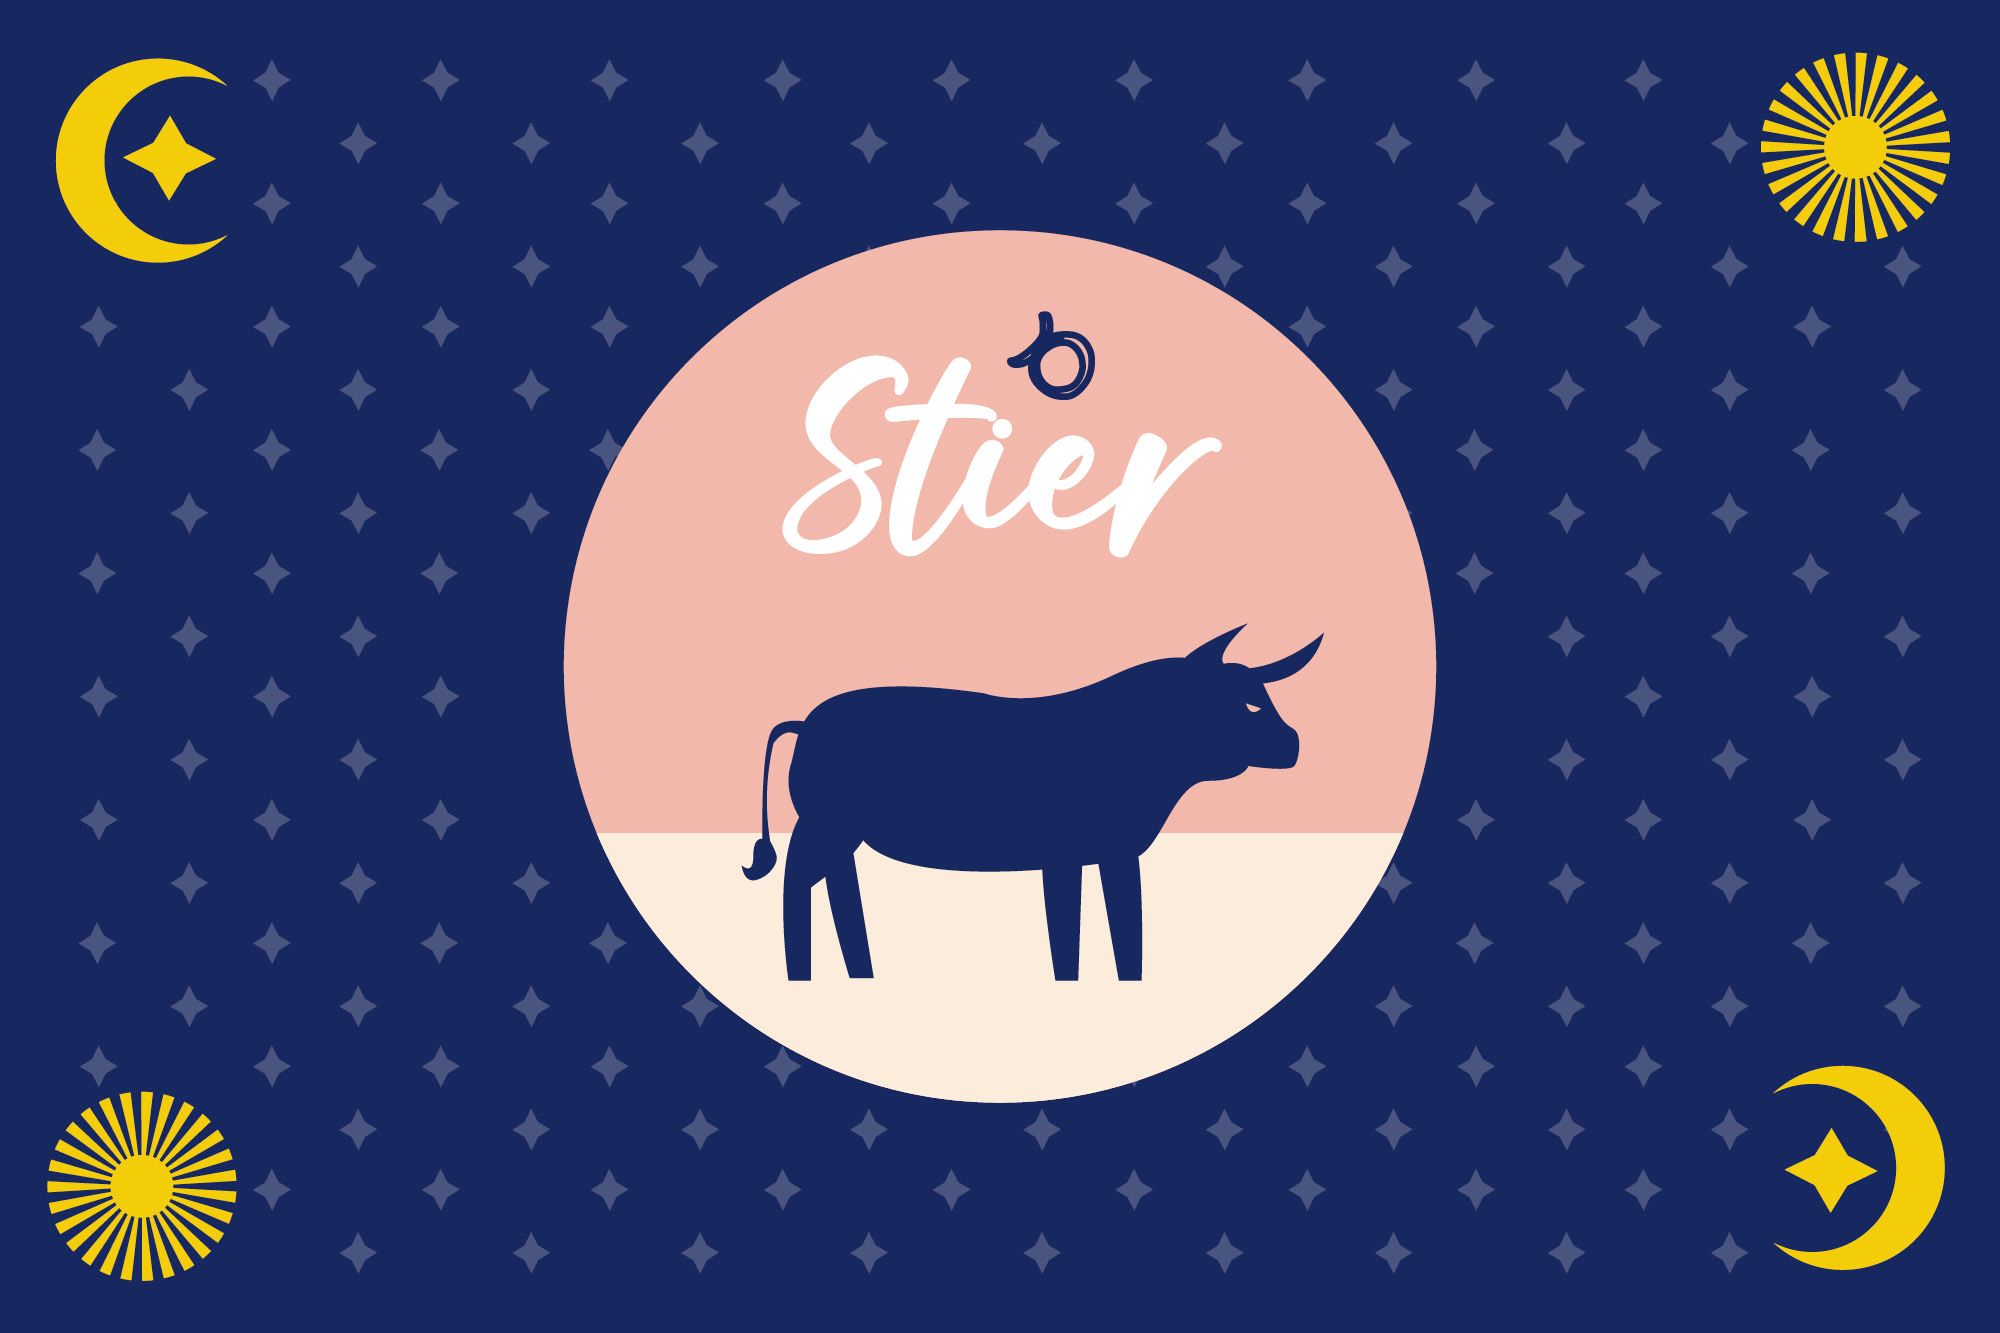 Sternzeichensymbol Stier auf blauem Hintergrund von Sternen umgeben.